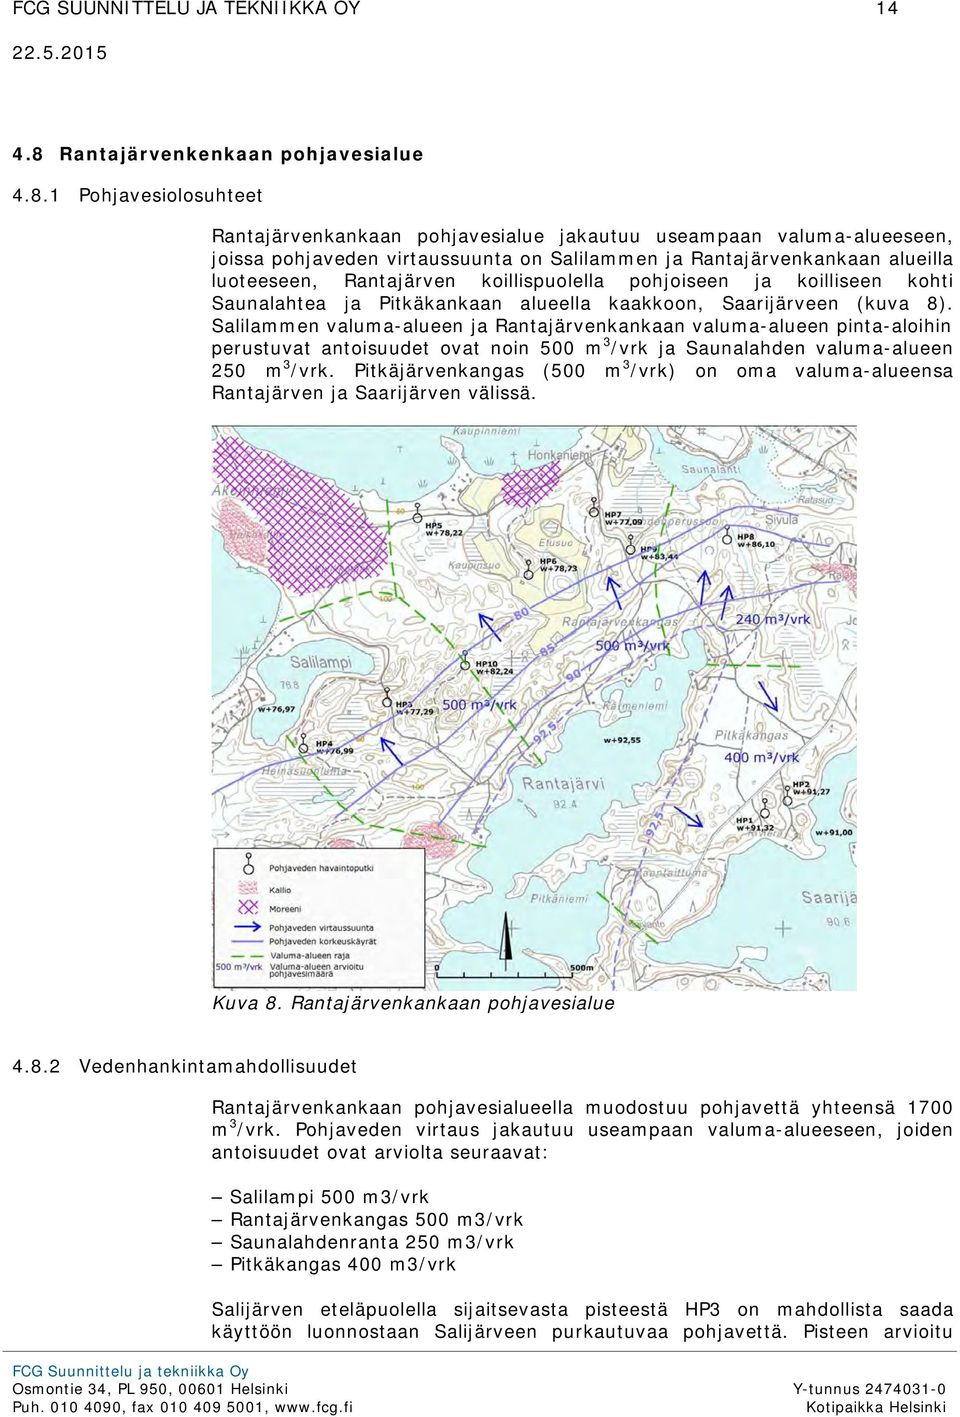 1 Pohjavesiolosuhteet Rantajärvenkankaan pohjavesialue jakautuu useampaan valuma-alueeseen, joissa pohjaveden virtaussuunta on Salilammen ja Rantajärvenkankaan alueilla luoteeseen, Rantajärven